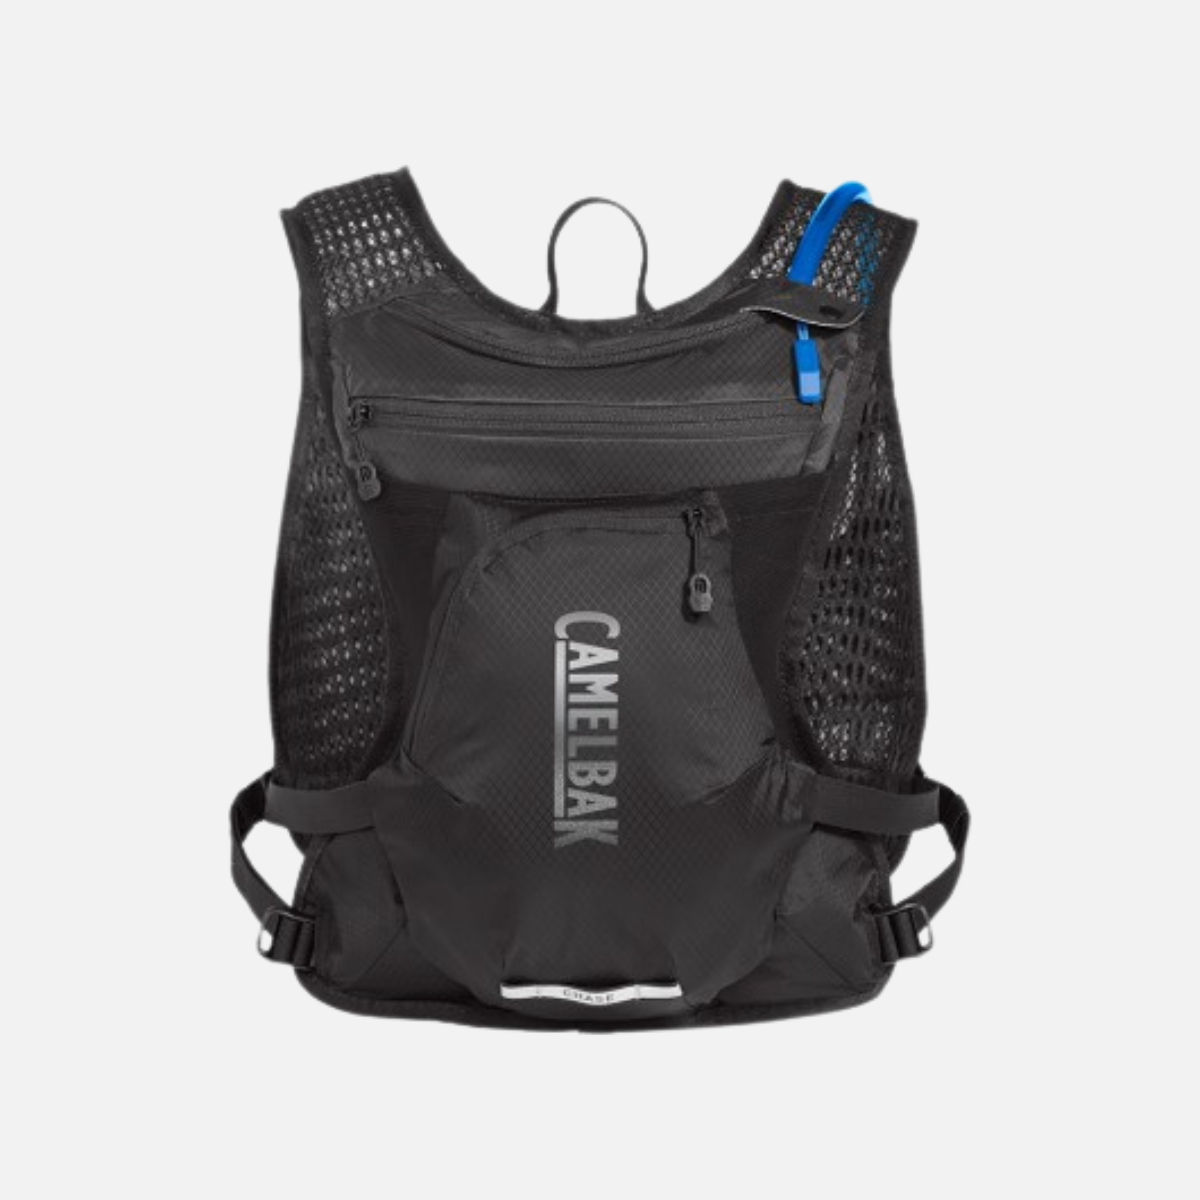 Camelbak Chase Bike Vest Pack 1.5L (28-46 in) -Black